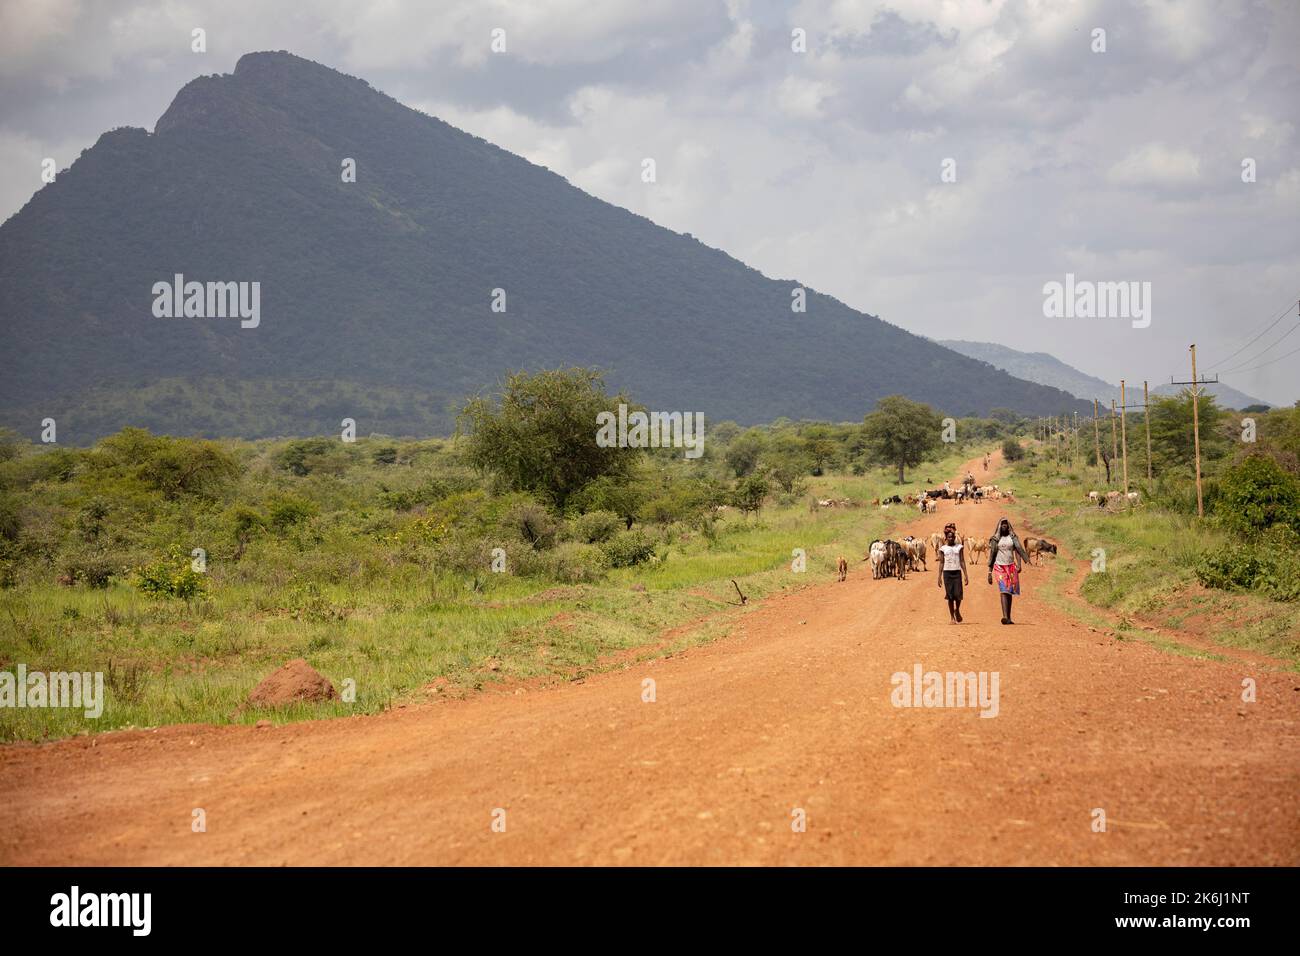 Fußgänger und Rinder bewegen sich auf einer unbefestigten Straße im abgelegenen Abim District, Uganda, Ostafrika. Stockfoto